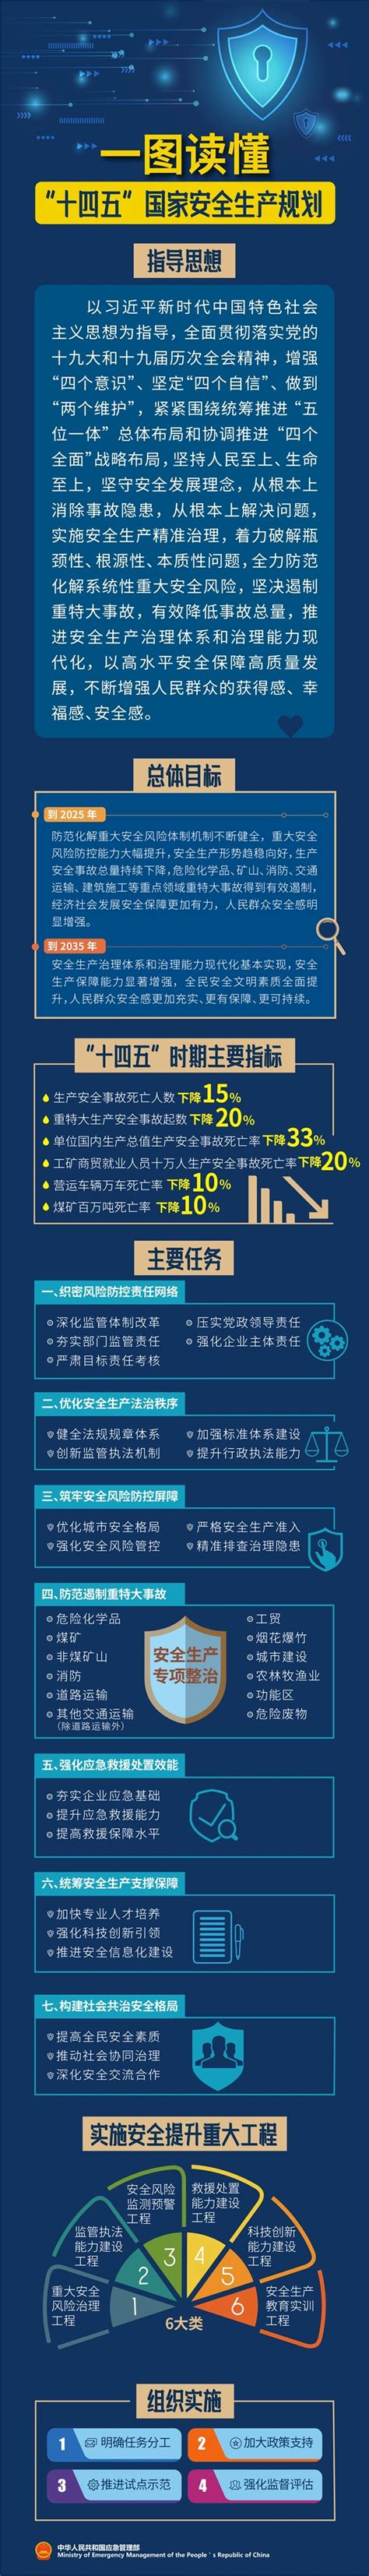 一图看懂中国人寿寿险2021年报业绩-保险-金融界